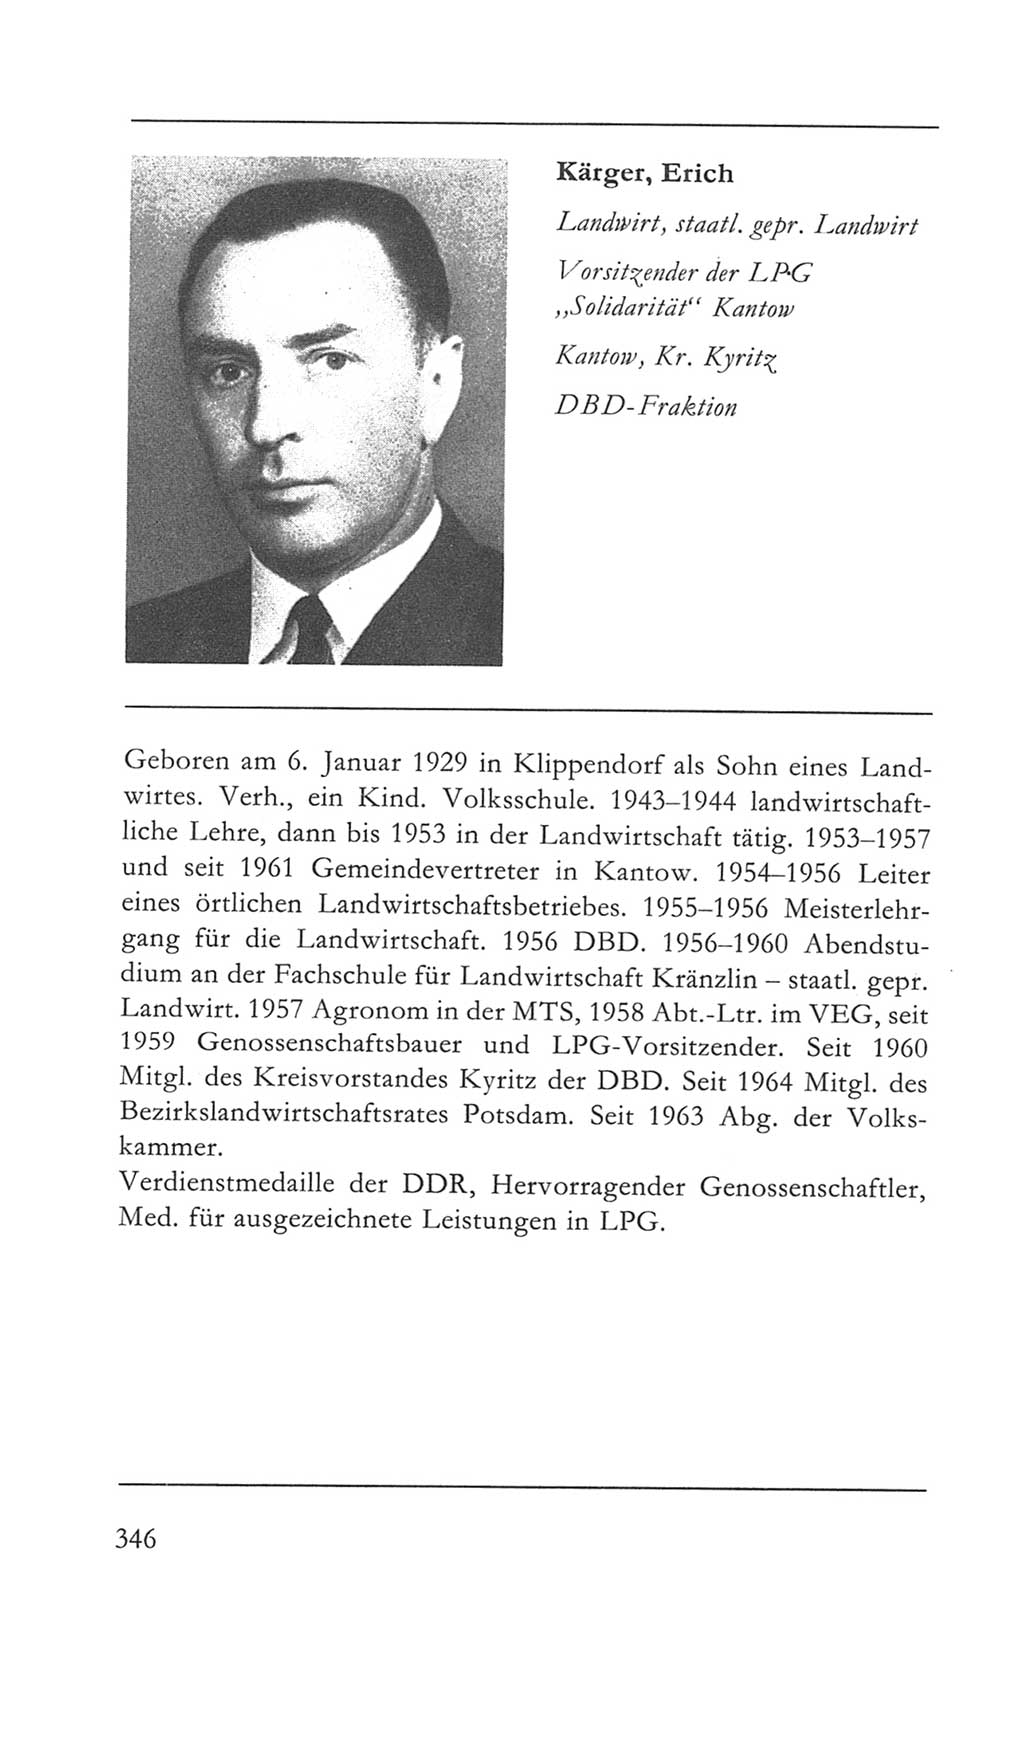 Volkskammer (VK) der Deutschen Demokratischen Republik (DDR) 5. Wahlperiode 1967-1971, Seite 346 (VK. DDR 5. WP. 1967-1971, S. 346)